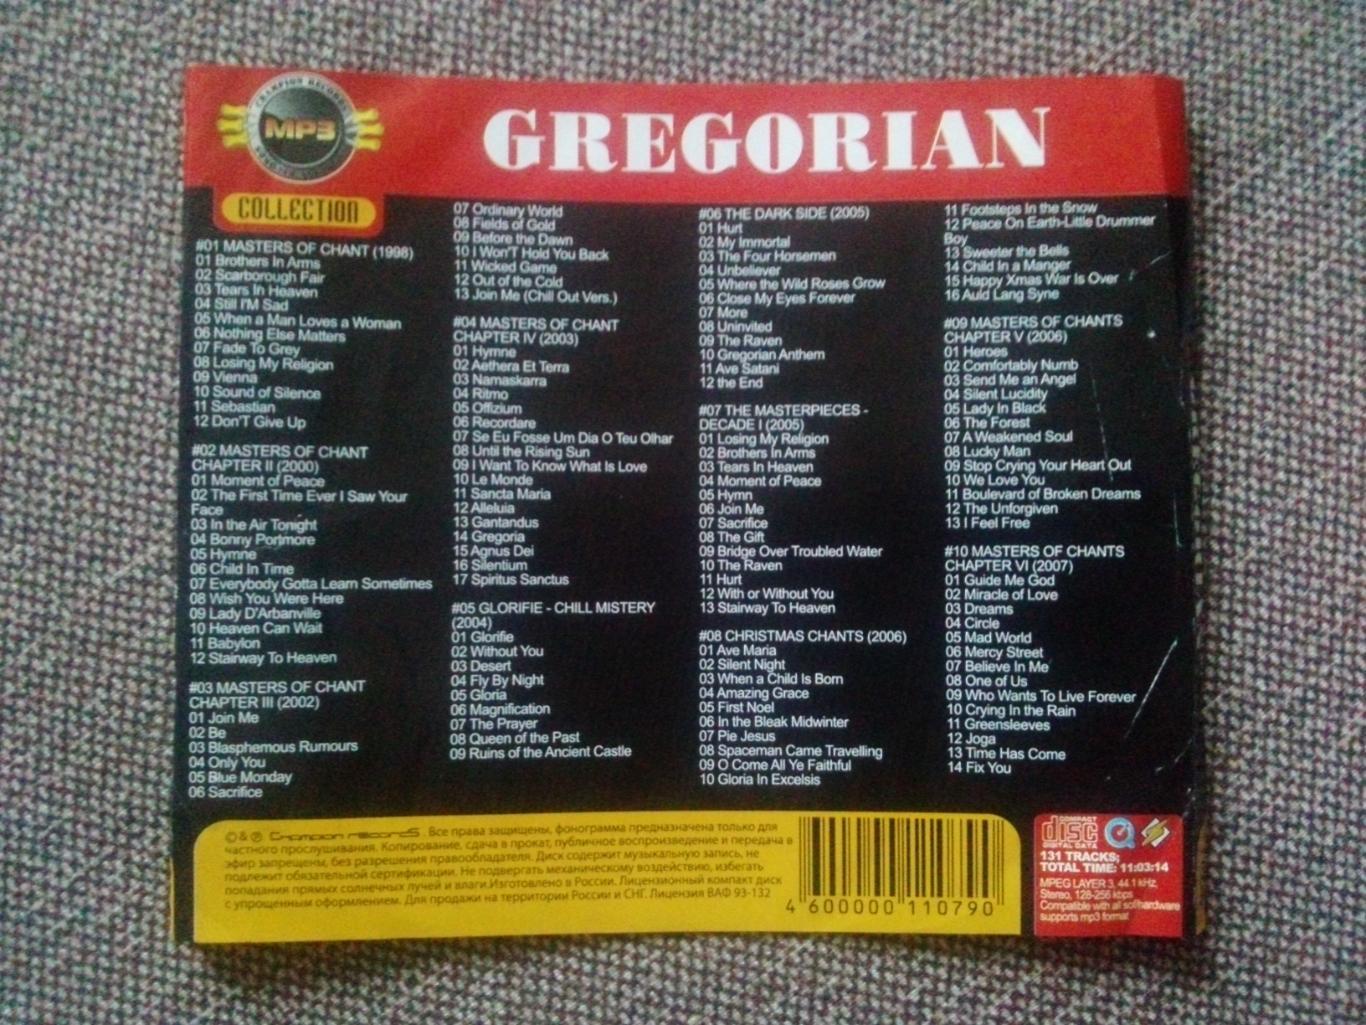 MP - 3 CD : группа Gregorian 1998 - 2007 гг. (10 альбомов) Рок - музыка 5